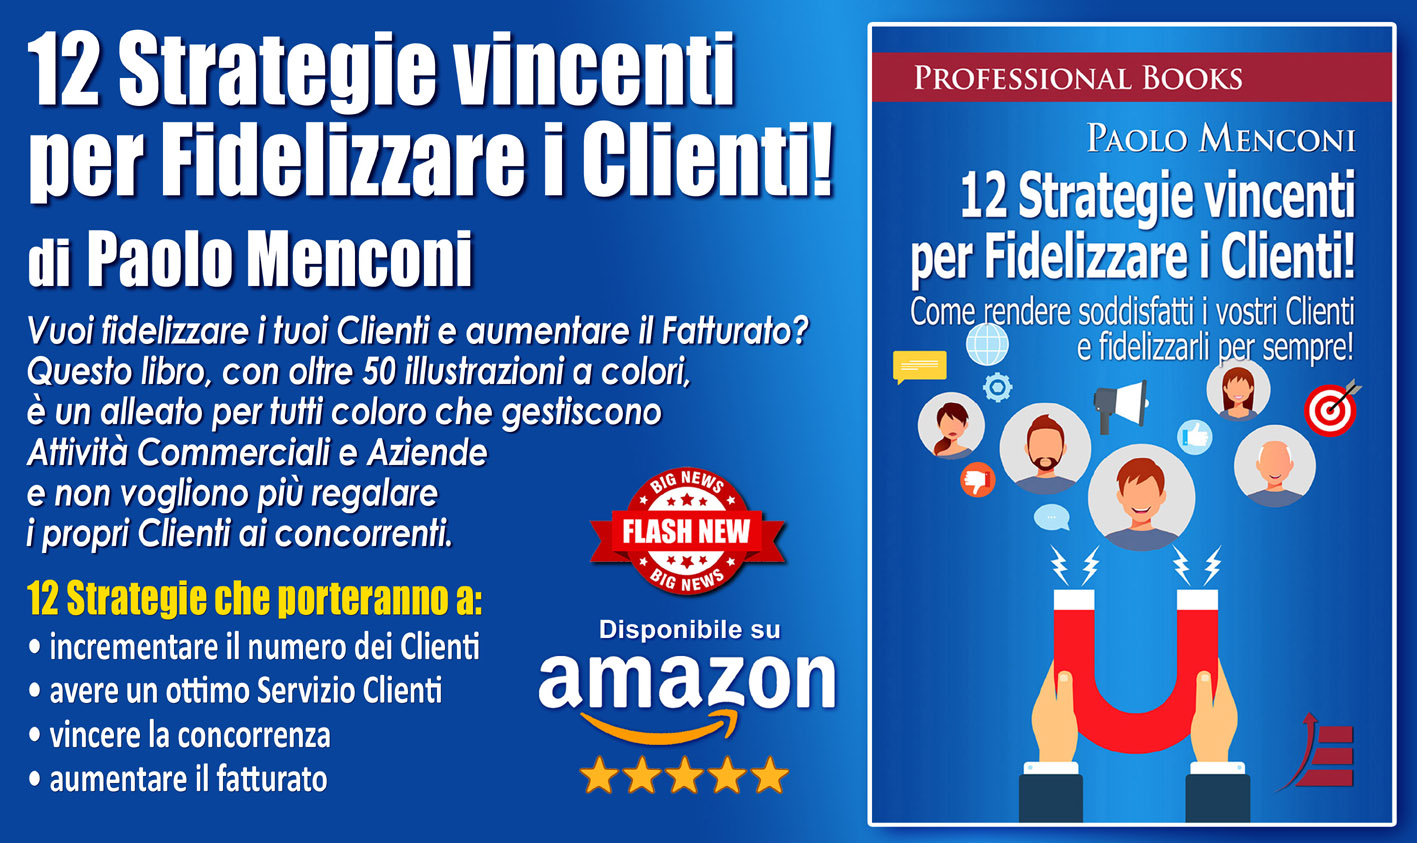 Paolo Menconi ci svela nel nuovo libro, le “12 Strategie vincenti per Fidelizzare i Clienti!”